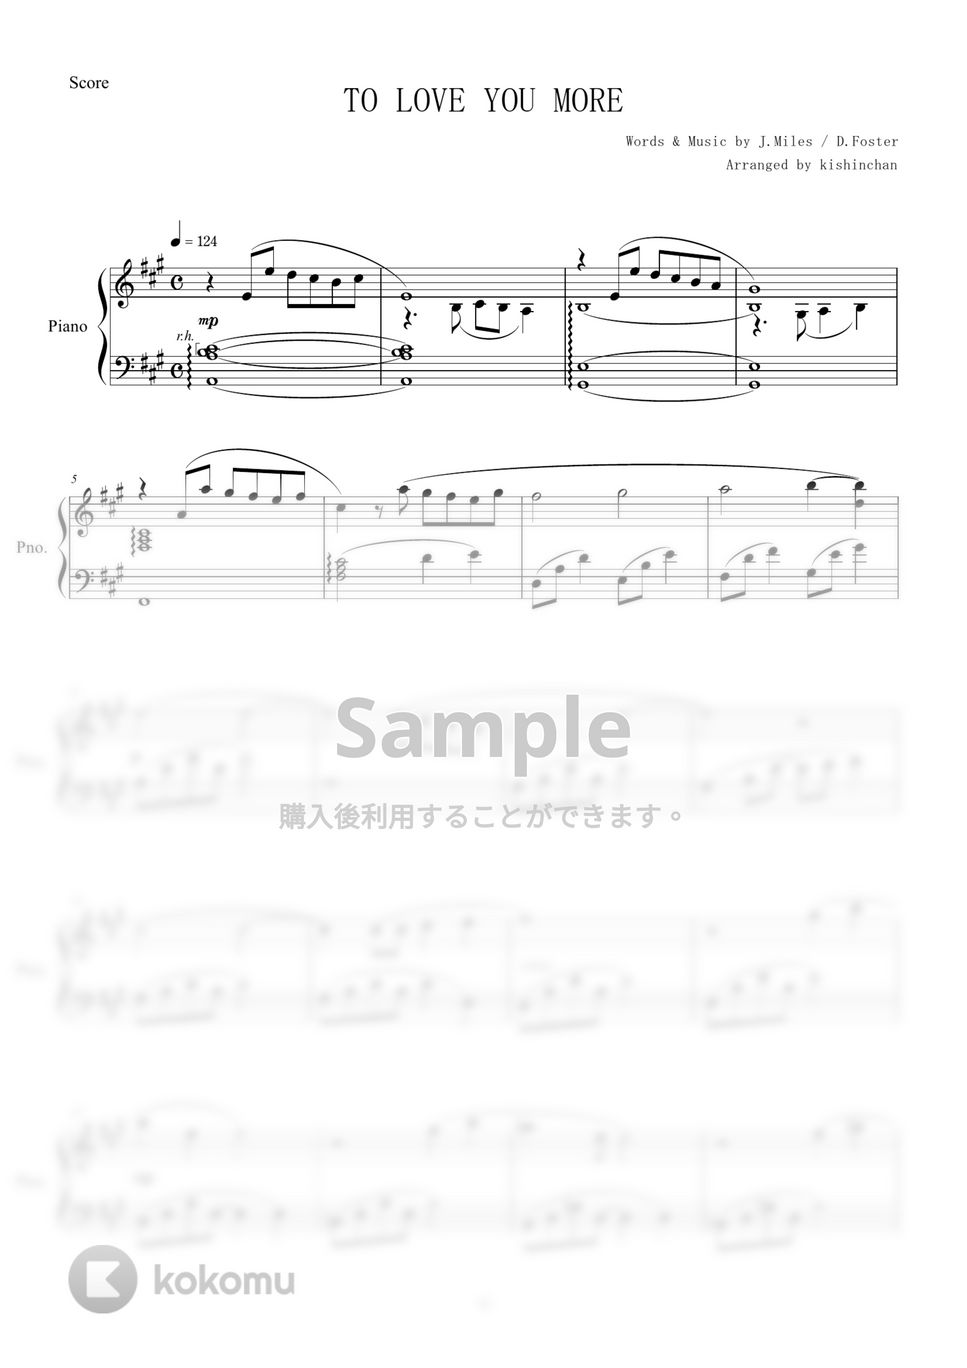 セリーヌ・ディオン - TO LOVE YOU MORE (ピアノソロ中級) by Ｙasunori　Oshiro